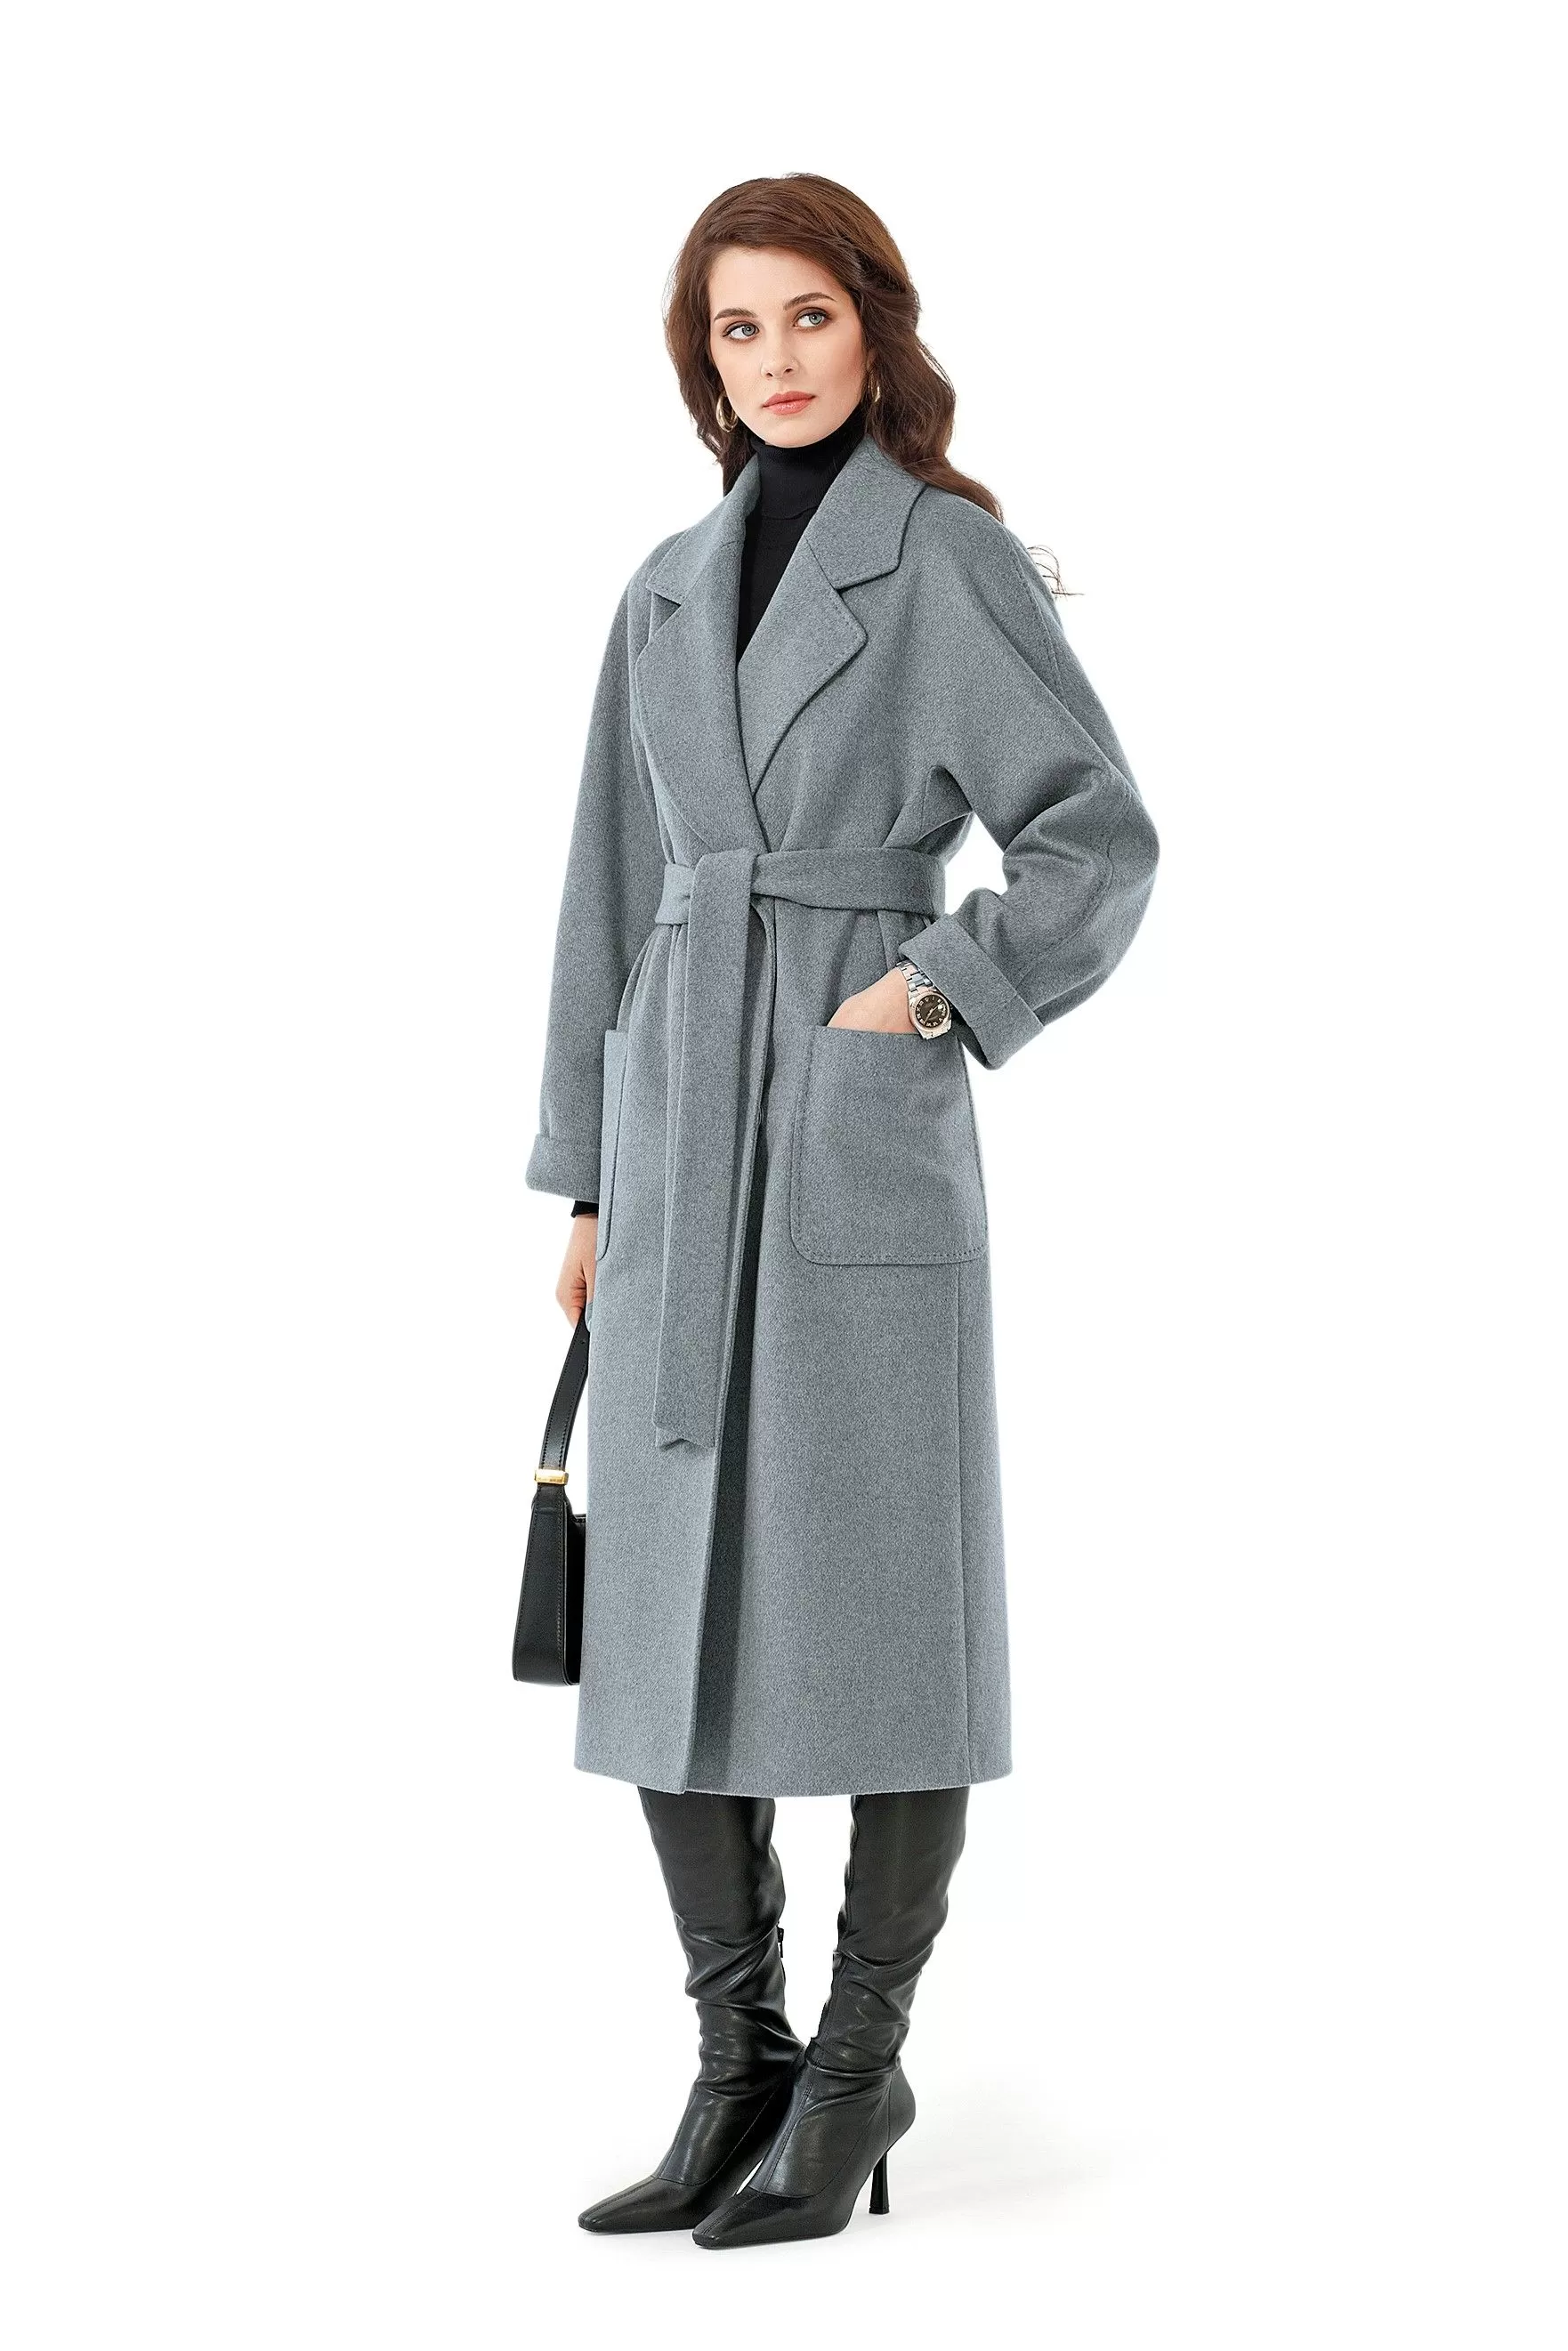 Как и с чем  носить пальто весной 2023, трендовые комбинации от стилистов?